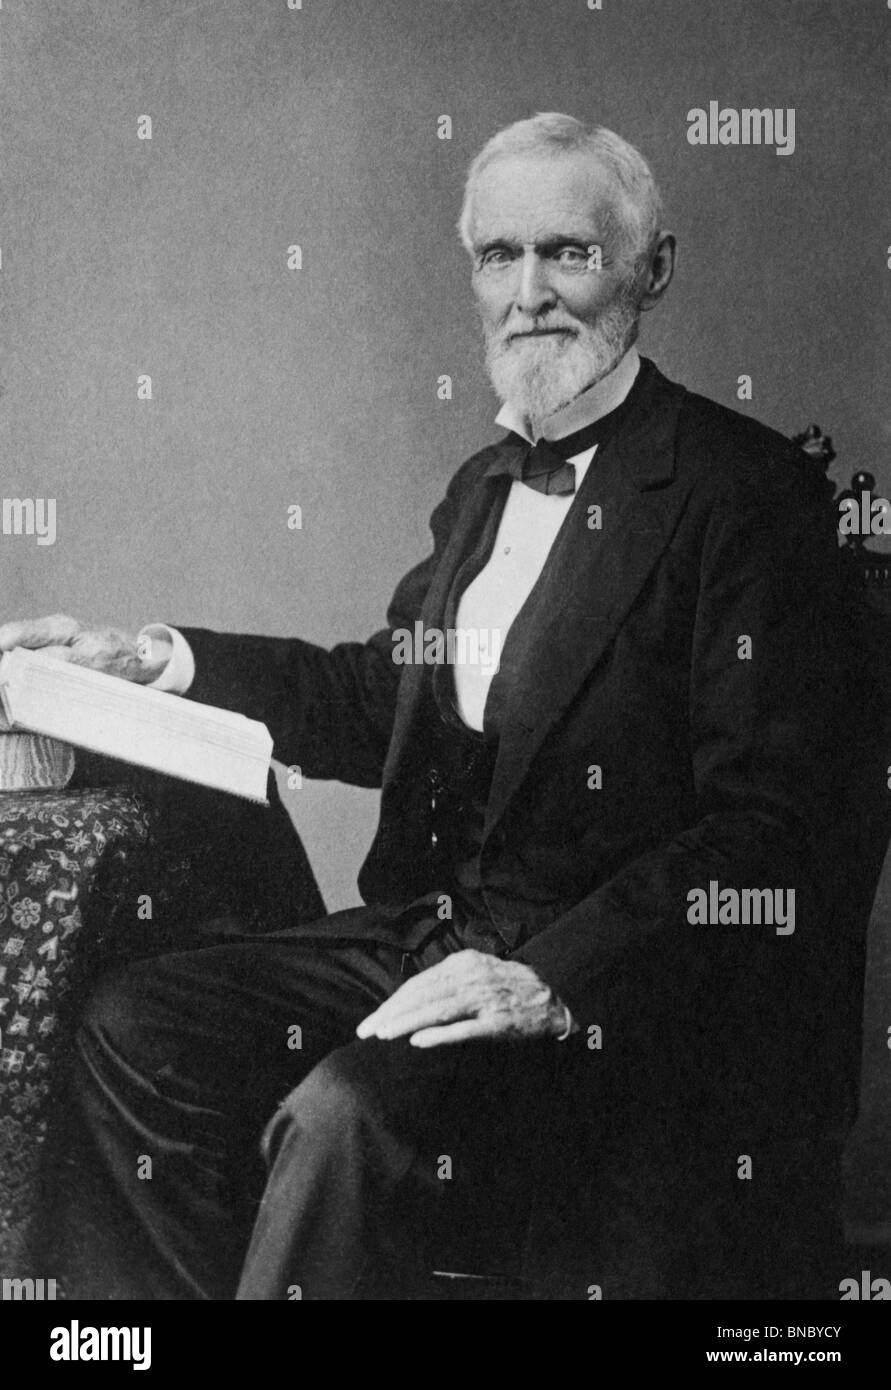 Portrait photo circa 1880 de Jefferson Davis (1808 - 1889) - Président des États confédérés d'Amérique, de 1861 à 1865. Banque D'Images